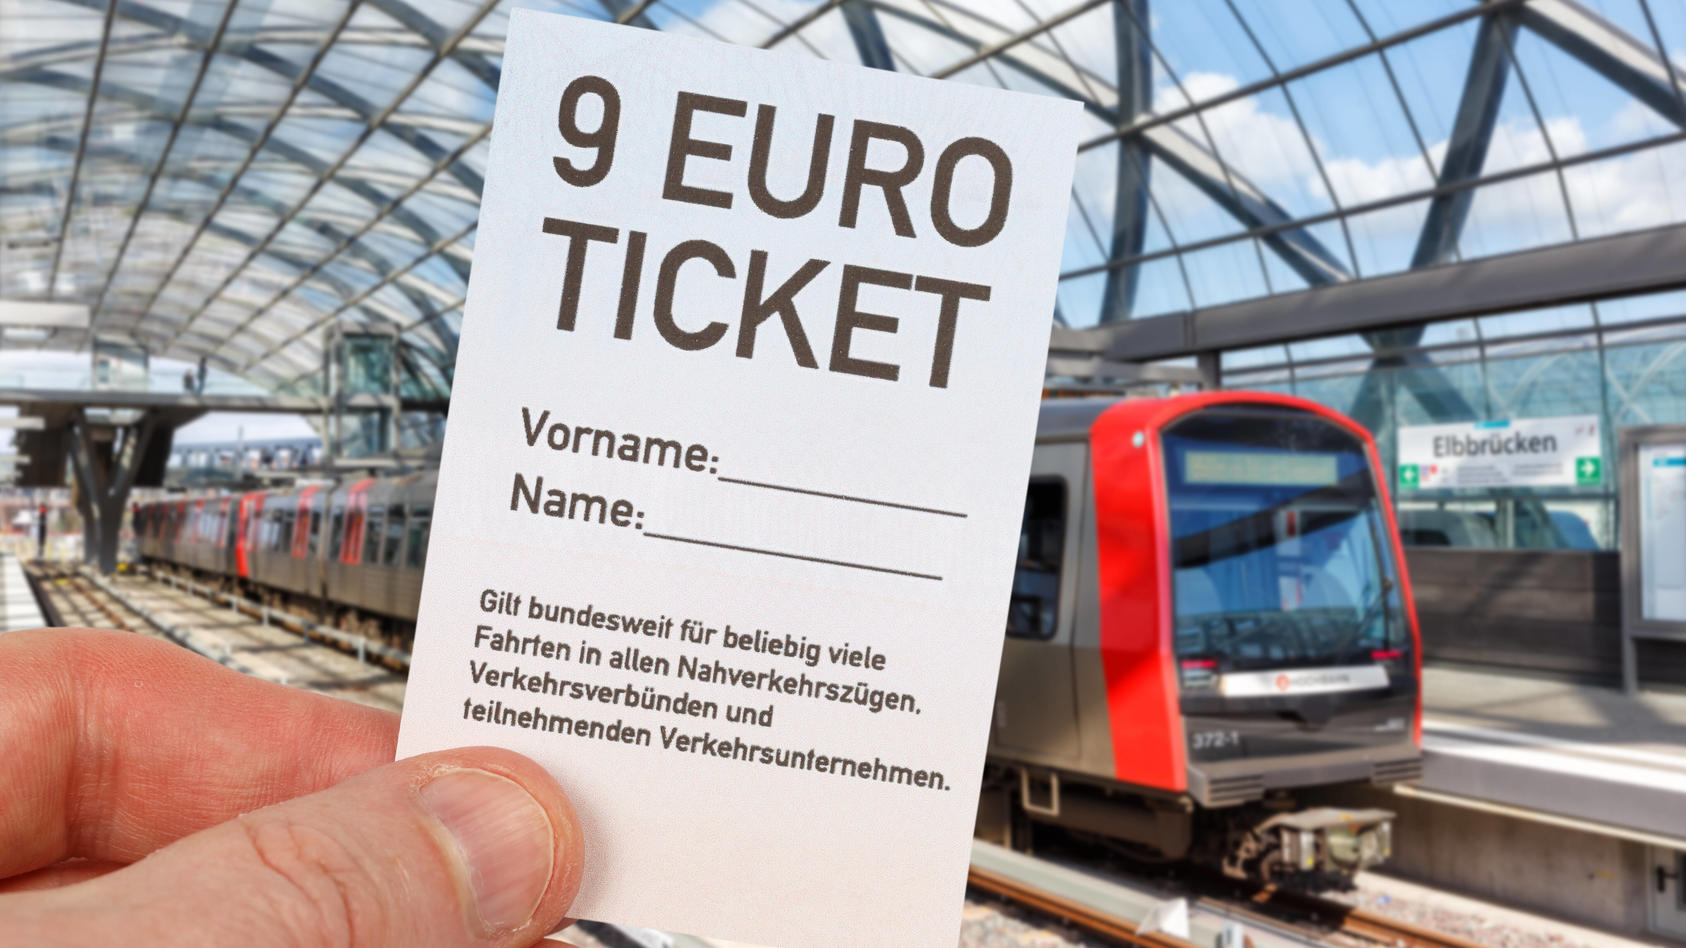  9-Euro-Ticket 9 Euro Ticket mit Metro U-Bahn Fotomontage in Hamburg, Deutschland Hamburg, Deutschland - 17. Mai 2022: 9-Euro-Ticket 9 Euro Ticket mit Metro U-Bahn Fotomontage in Hamburg, Deutschland. *** 9 Euro Ticket 9 Euro Ticket with Metro U Bahn